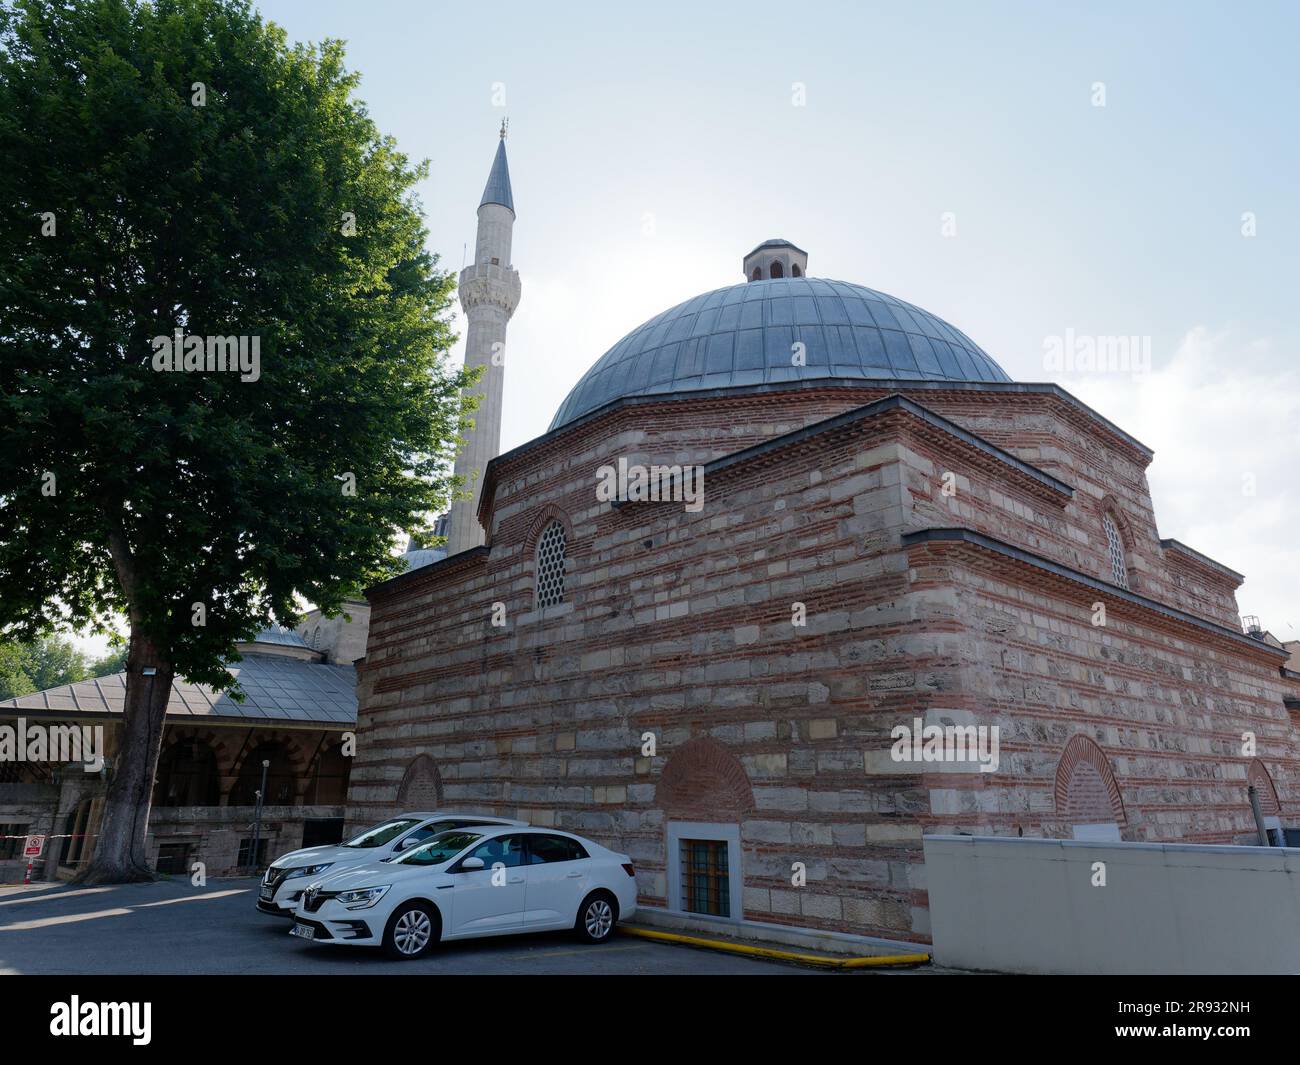 Kılıç Ali Paşa Hamam, ein renoviertes türkisches Badehaus aus dem 16. Jahrhundert im Stadtteil Tophane in Istanbul, Türkei. Kılıç Ali Pascha Moschee dahinter. Stockfoto